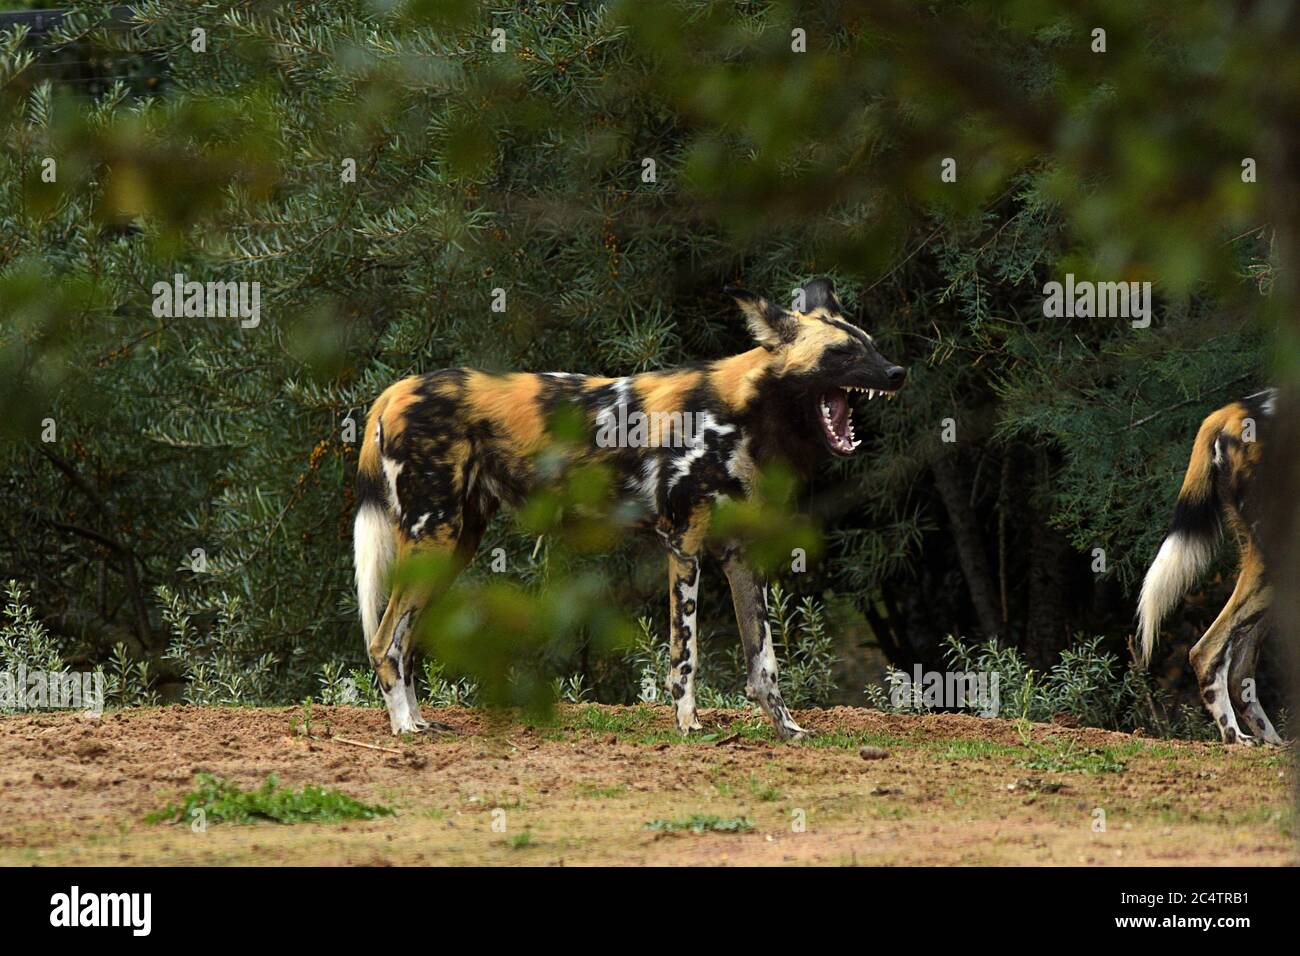 Cani selvatici africani in mostra allo zoo di Chester. Nella natura selvaggia, questa specie in via di estinzione caccia all'antilope e ad altre prede nelle regioni del sub-Sahara in Africa. Foto Stock